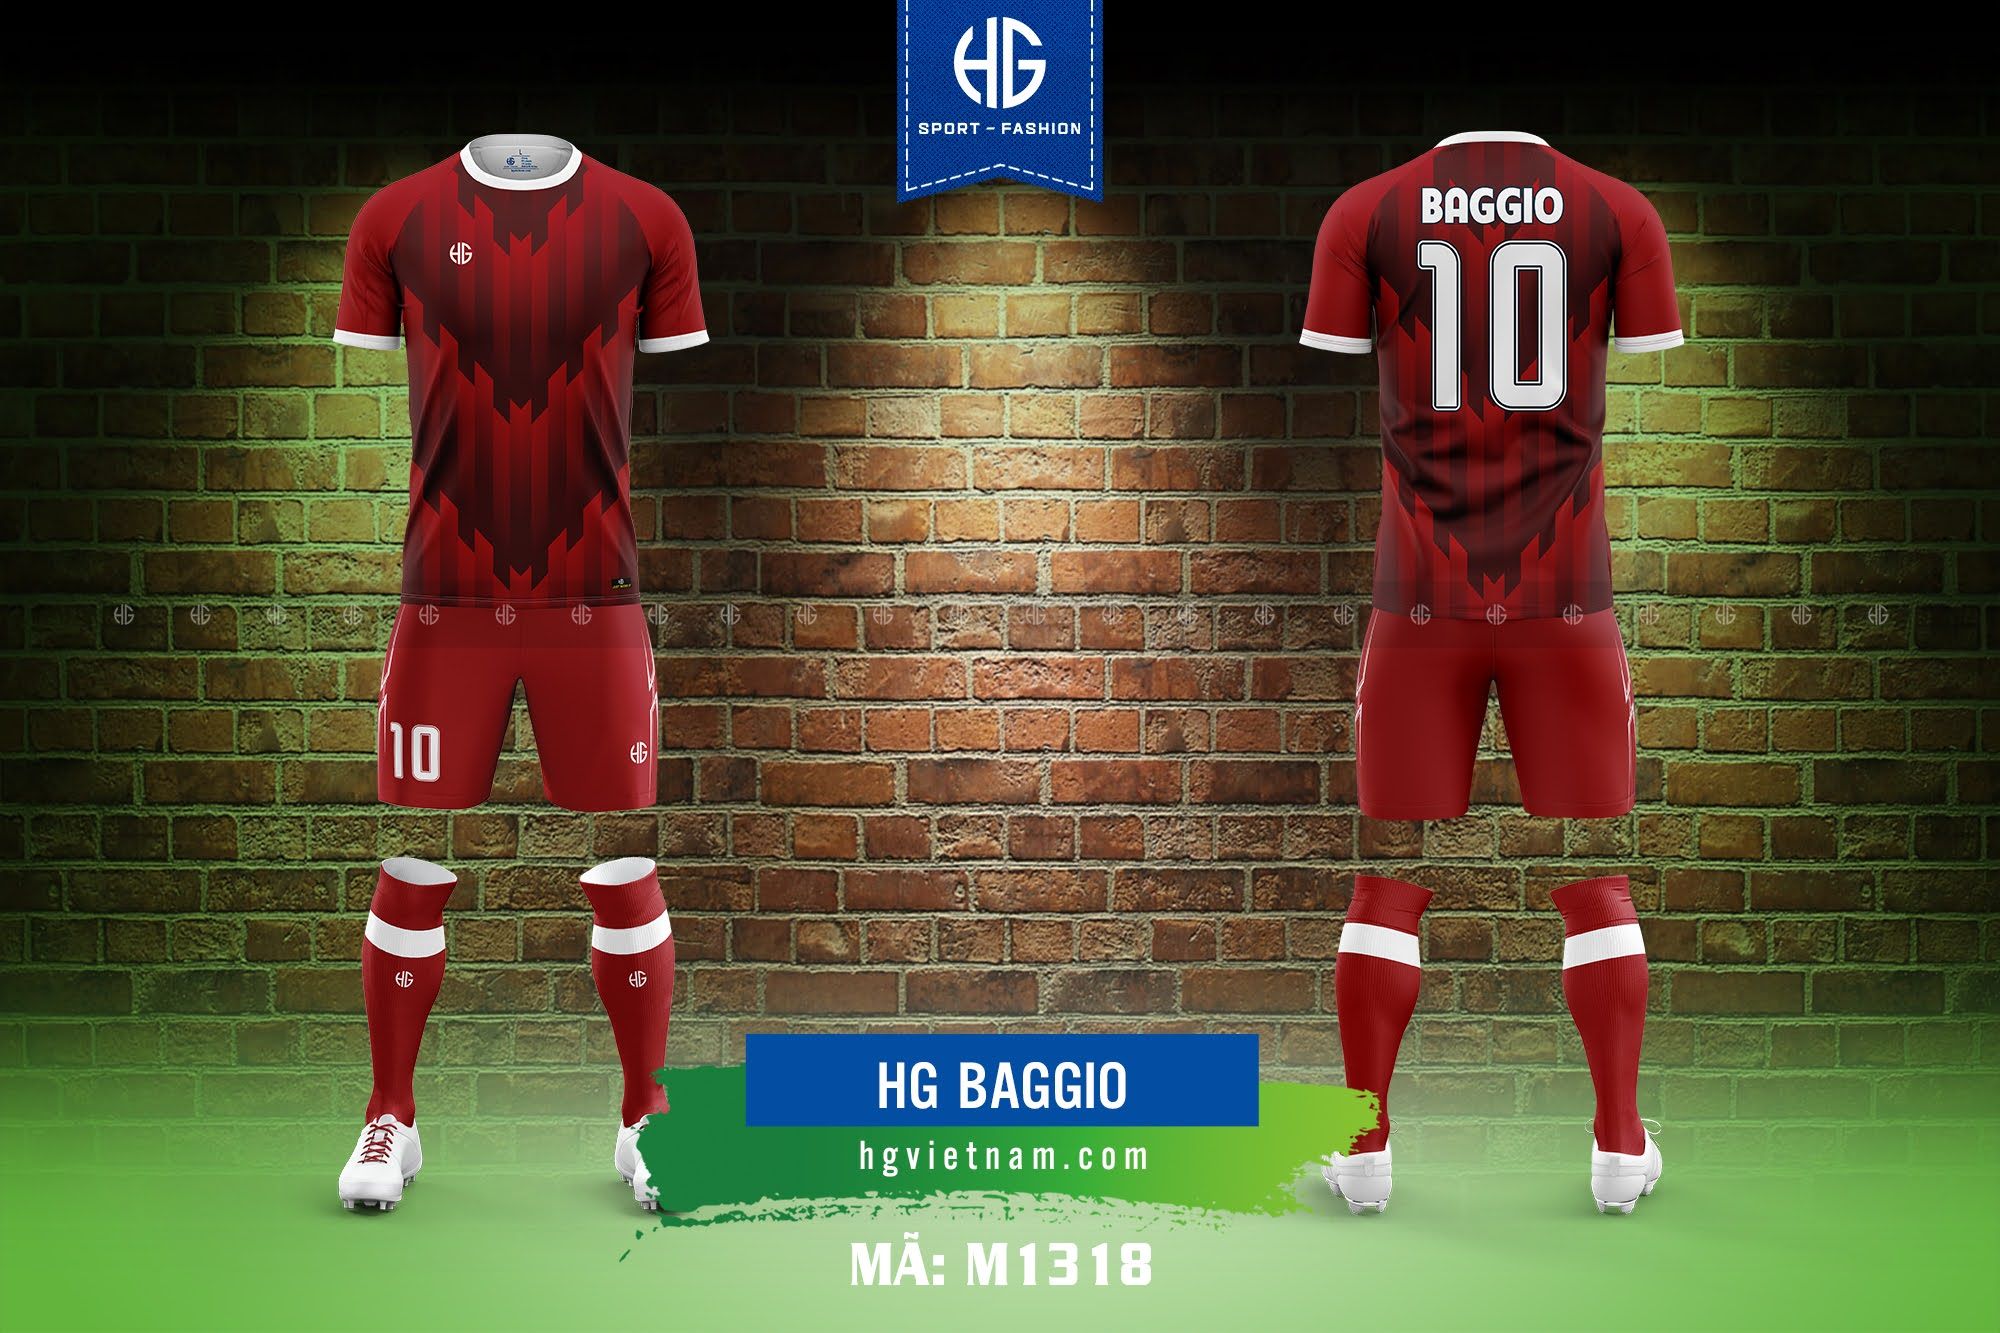  Áo bóng đá thiết kế M1318. HG Baggio 